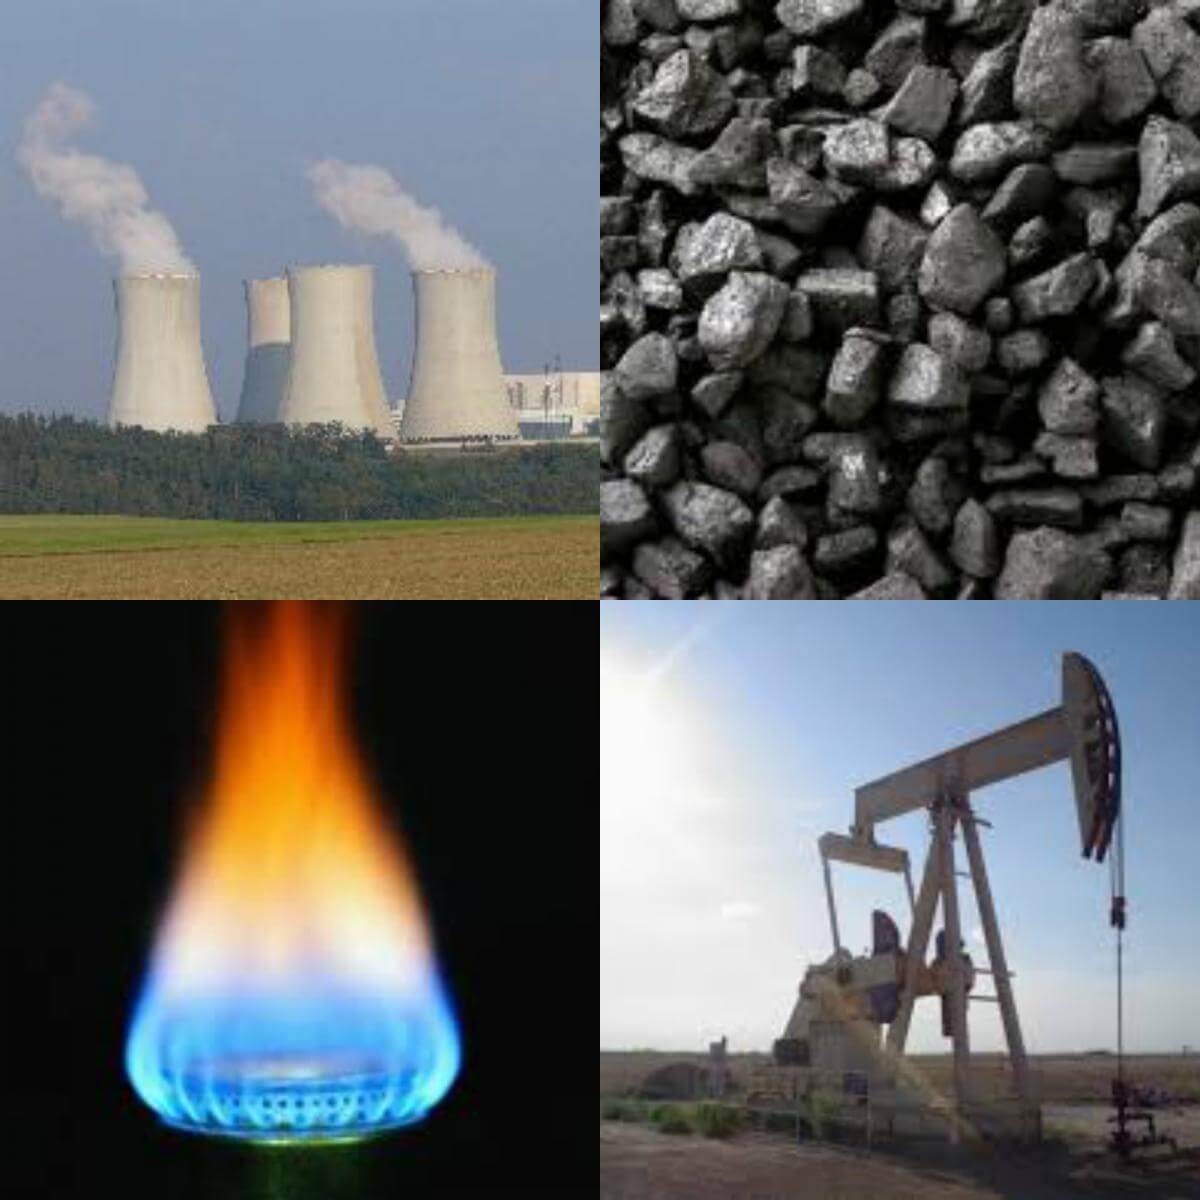 Уголь нефть использование. Энергоресурсы нефть ГАЗ уголь. Невозобновляемый источник энергии ГАЗ. Невозобновляемые источники (ископаемые), уголь, нефть, ГАЗ. Топливо и сырье.